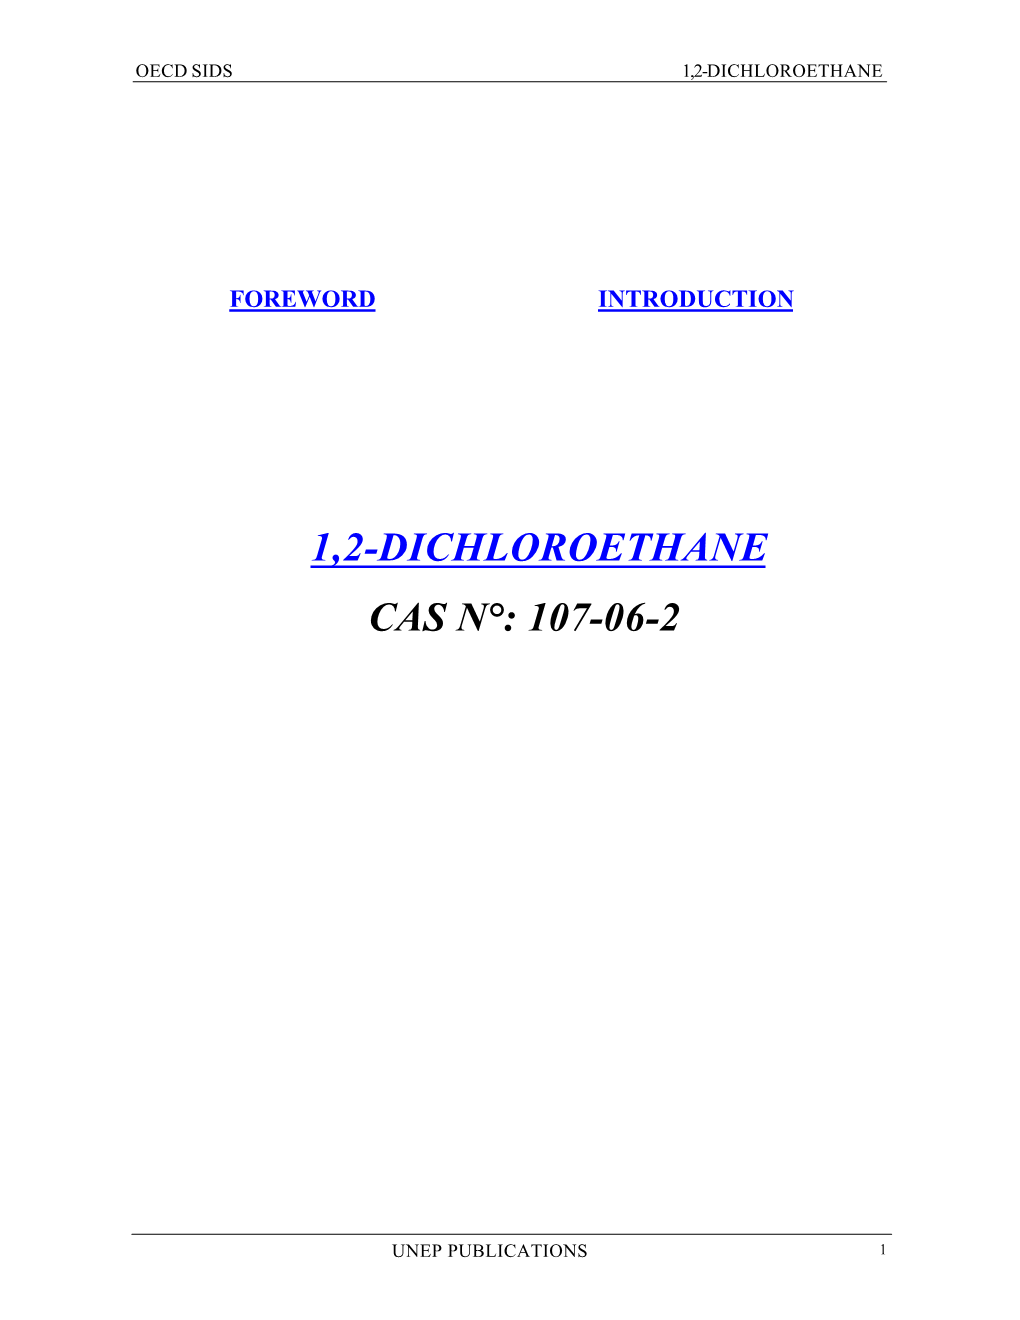 1,2-Dichloroethane Cas N°: 107-06-2